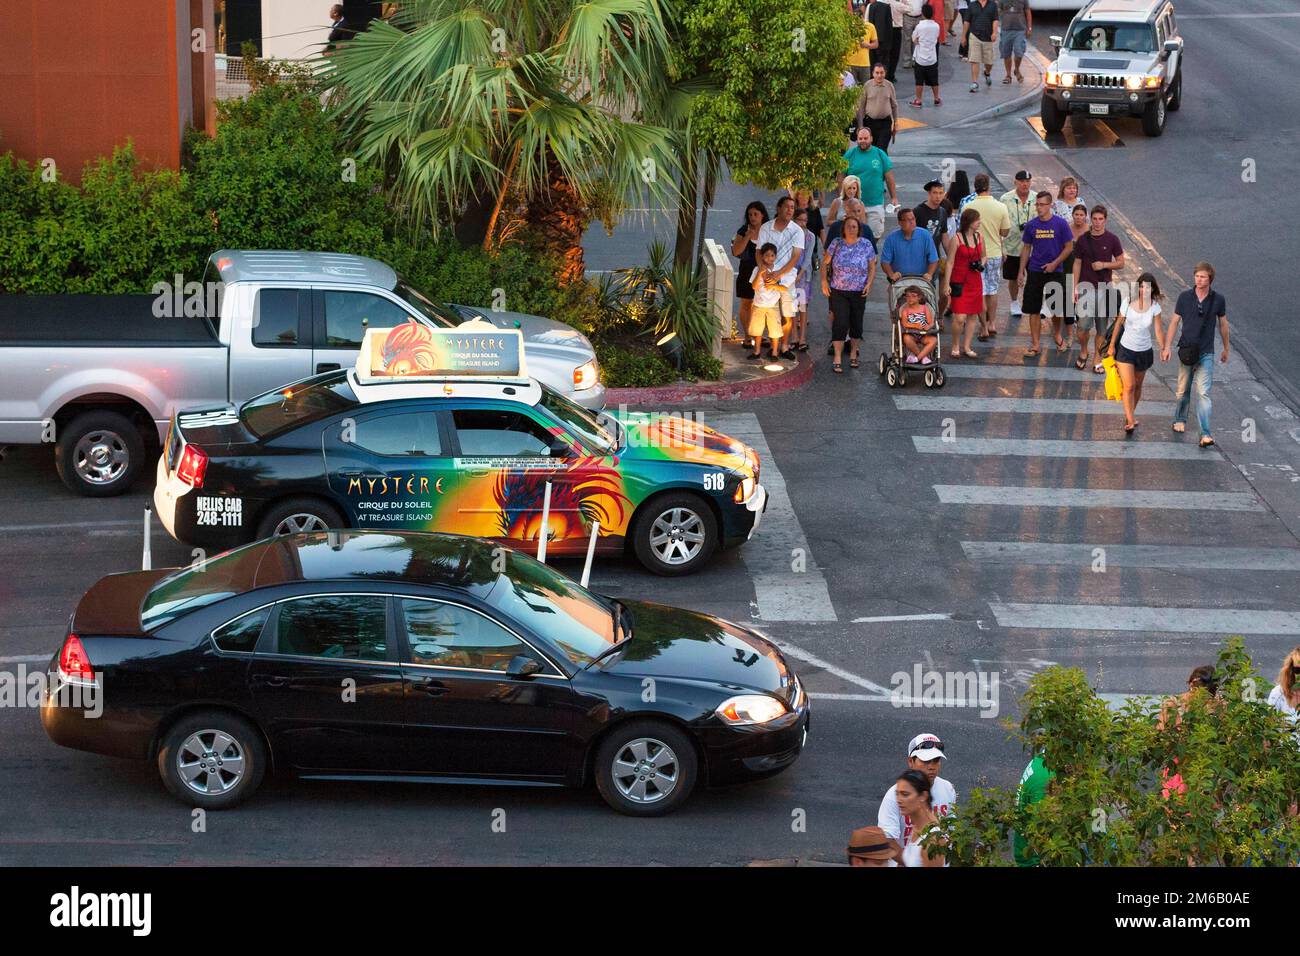 Auto e taxi con pubblicità colorata in un incrocio trafficato, pedoni che attraversano le traversate zebra, vista dall'alto, crepuscolo su Las Vegas Foto Stock